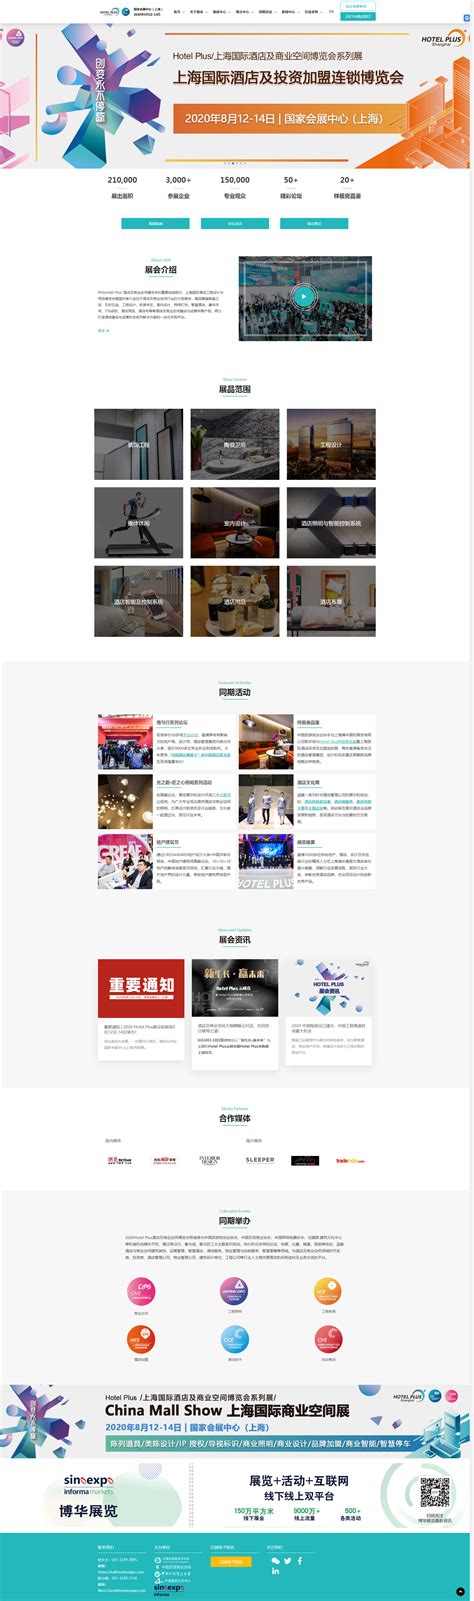 上海博华国际展览有限公司 - 【東谷互联】